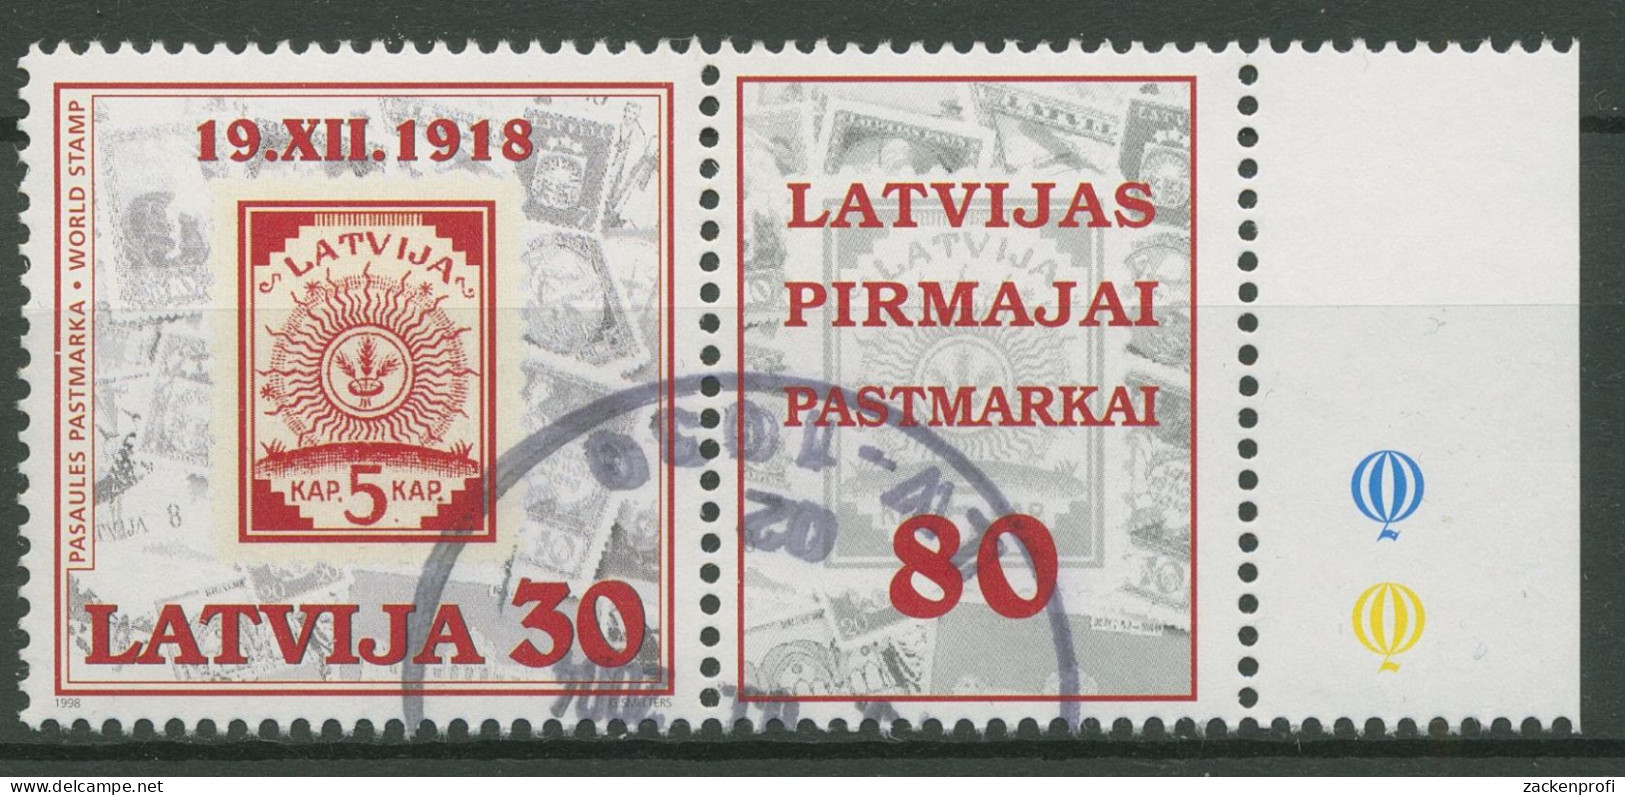 Lettland 1998 80 Jahre Briefmarken MiNr.2 Ähren Im Sonnenkreis 487 Zf Gestempelt - Latvia